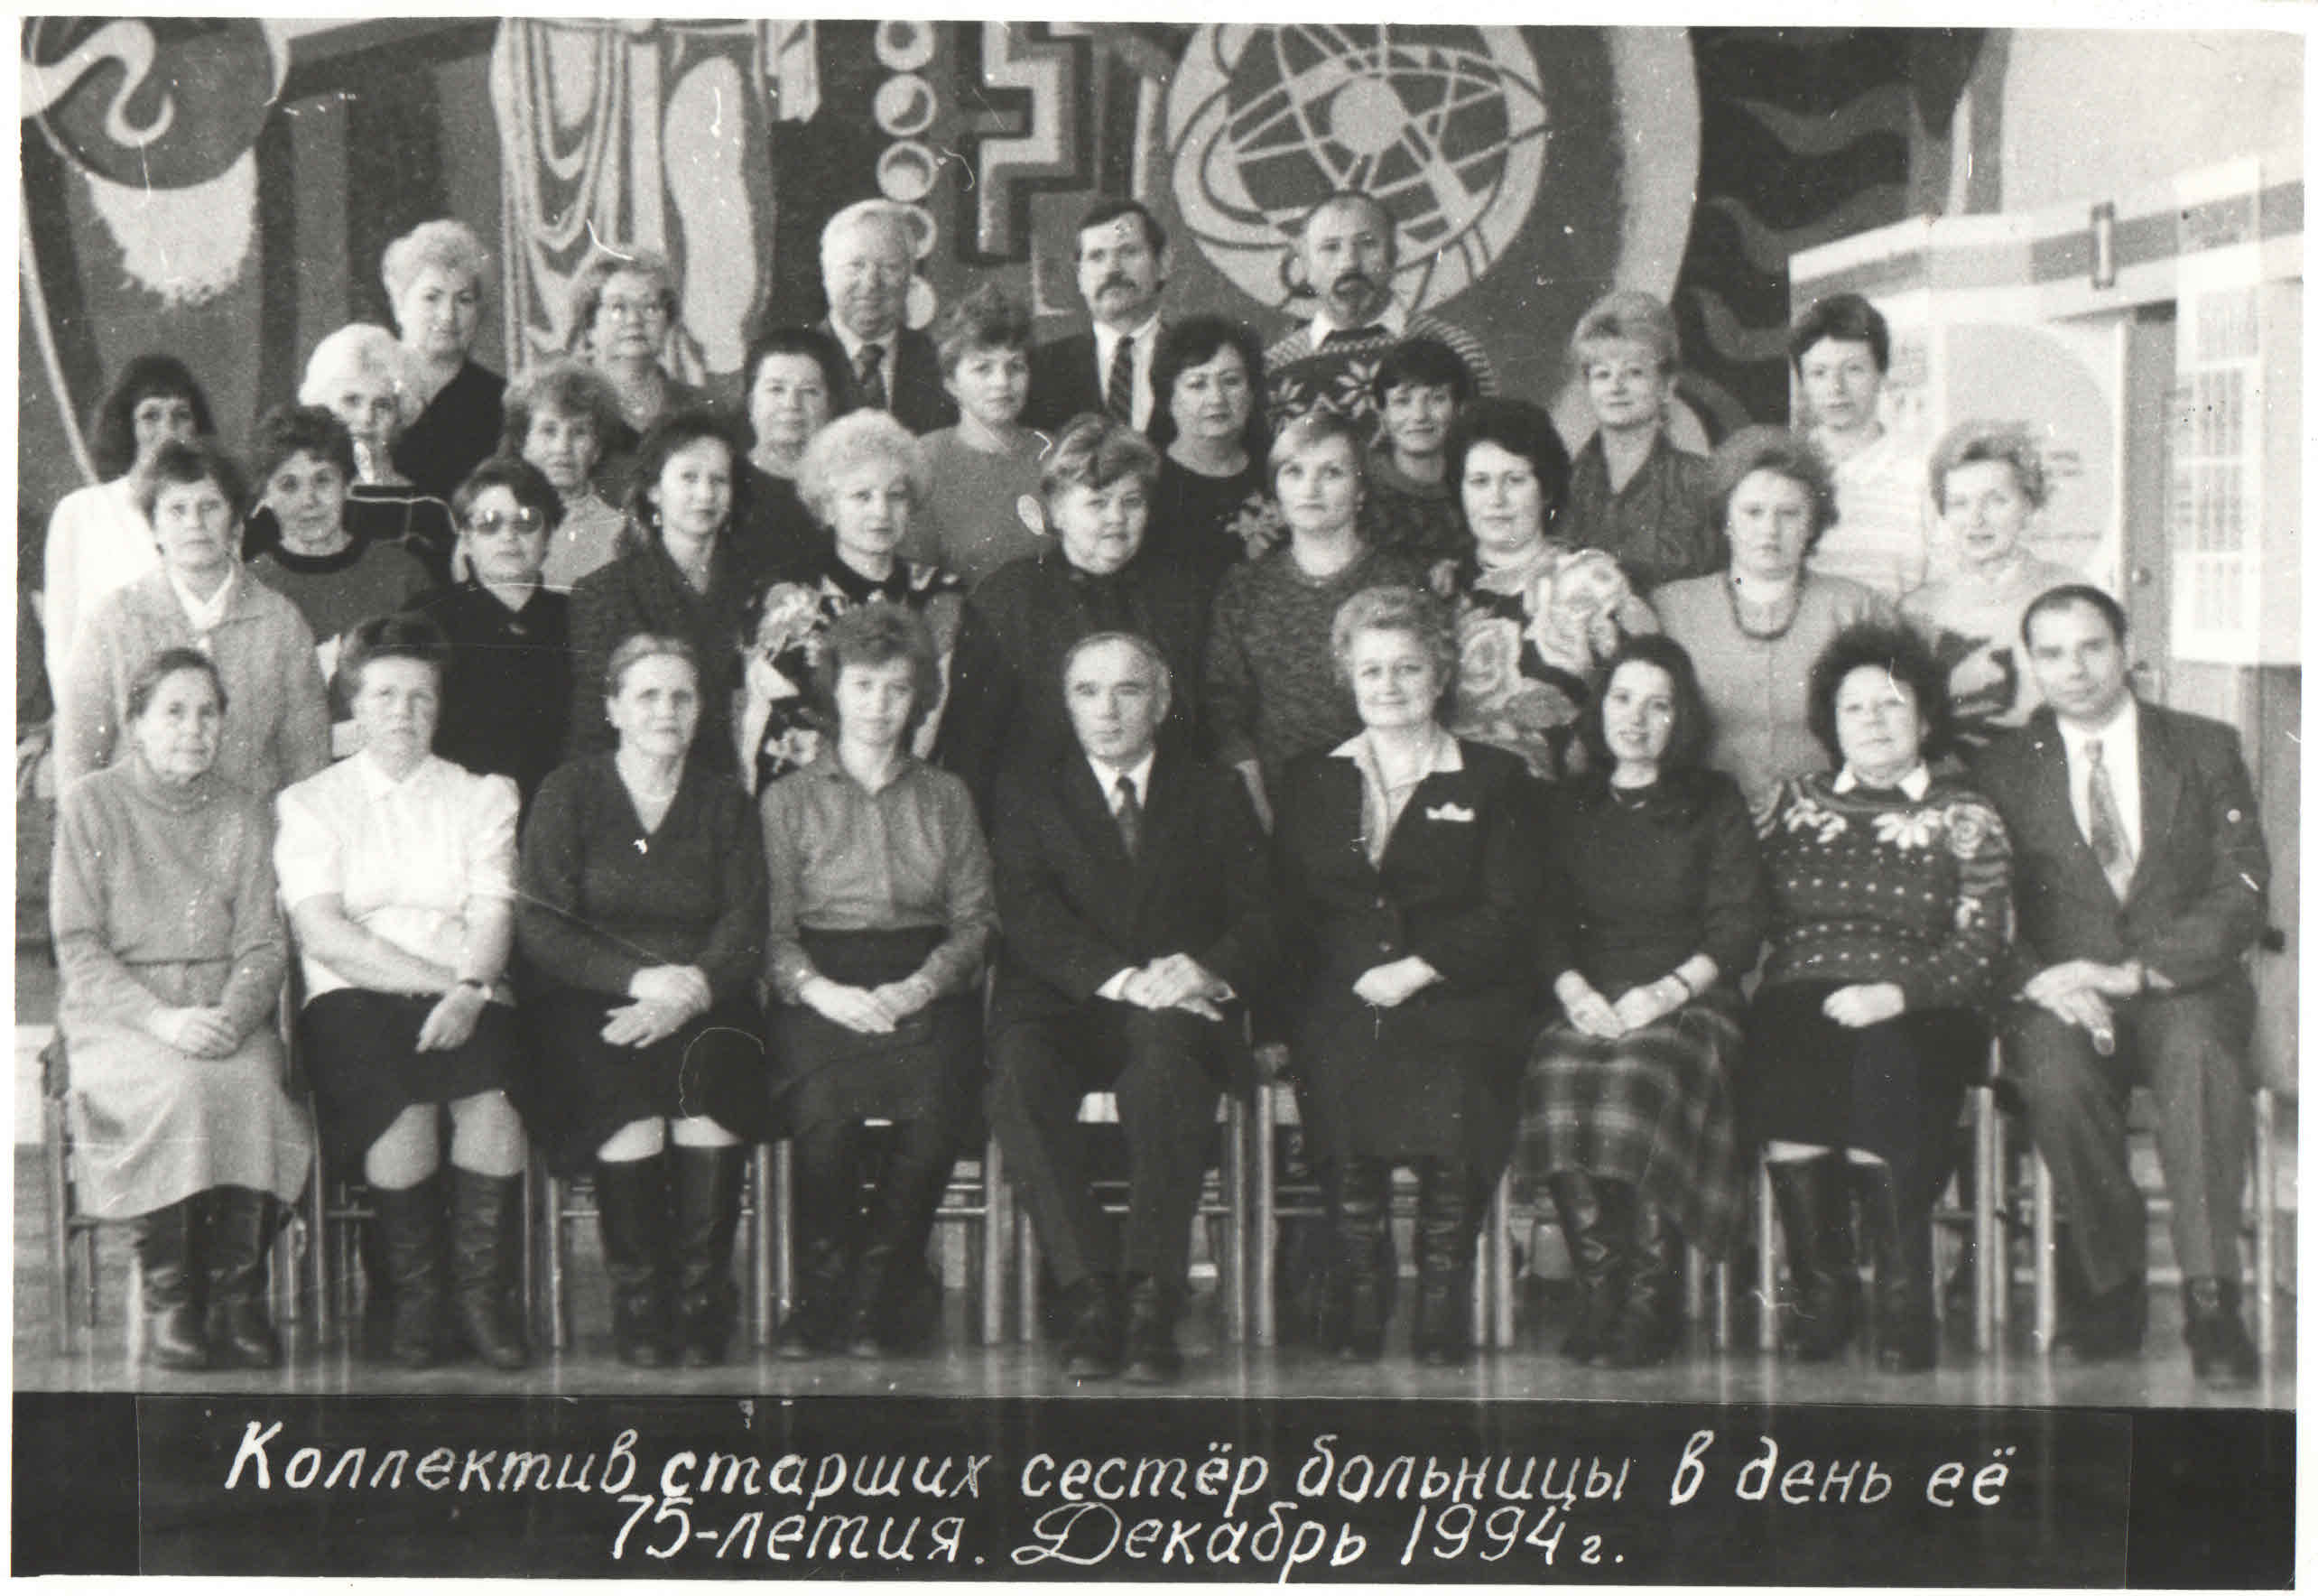 Kоллектив старших сестер больницы в день ее 75-летия декабрь 1994 г.